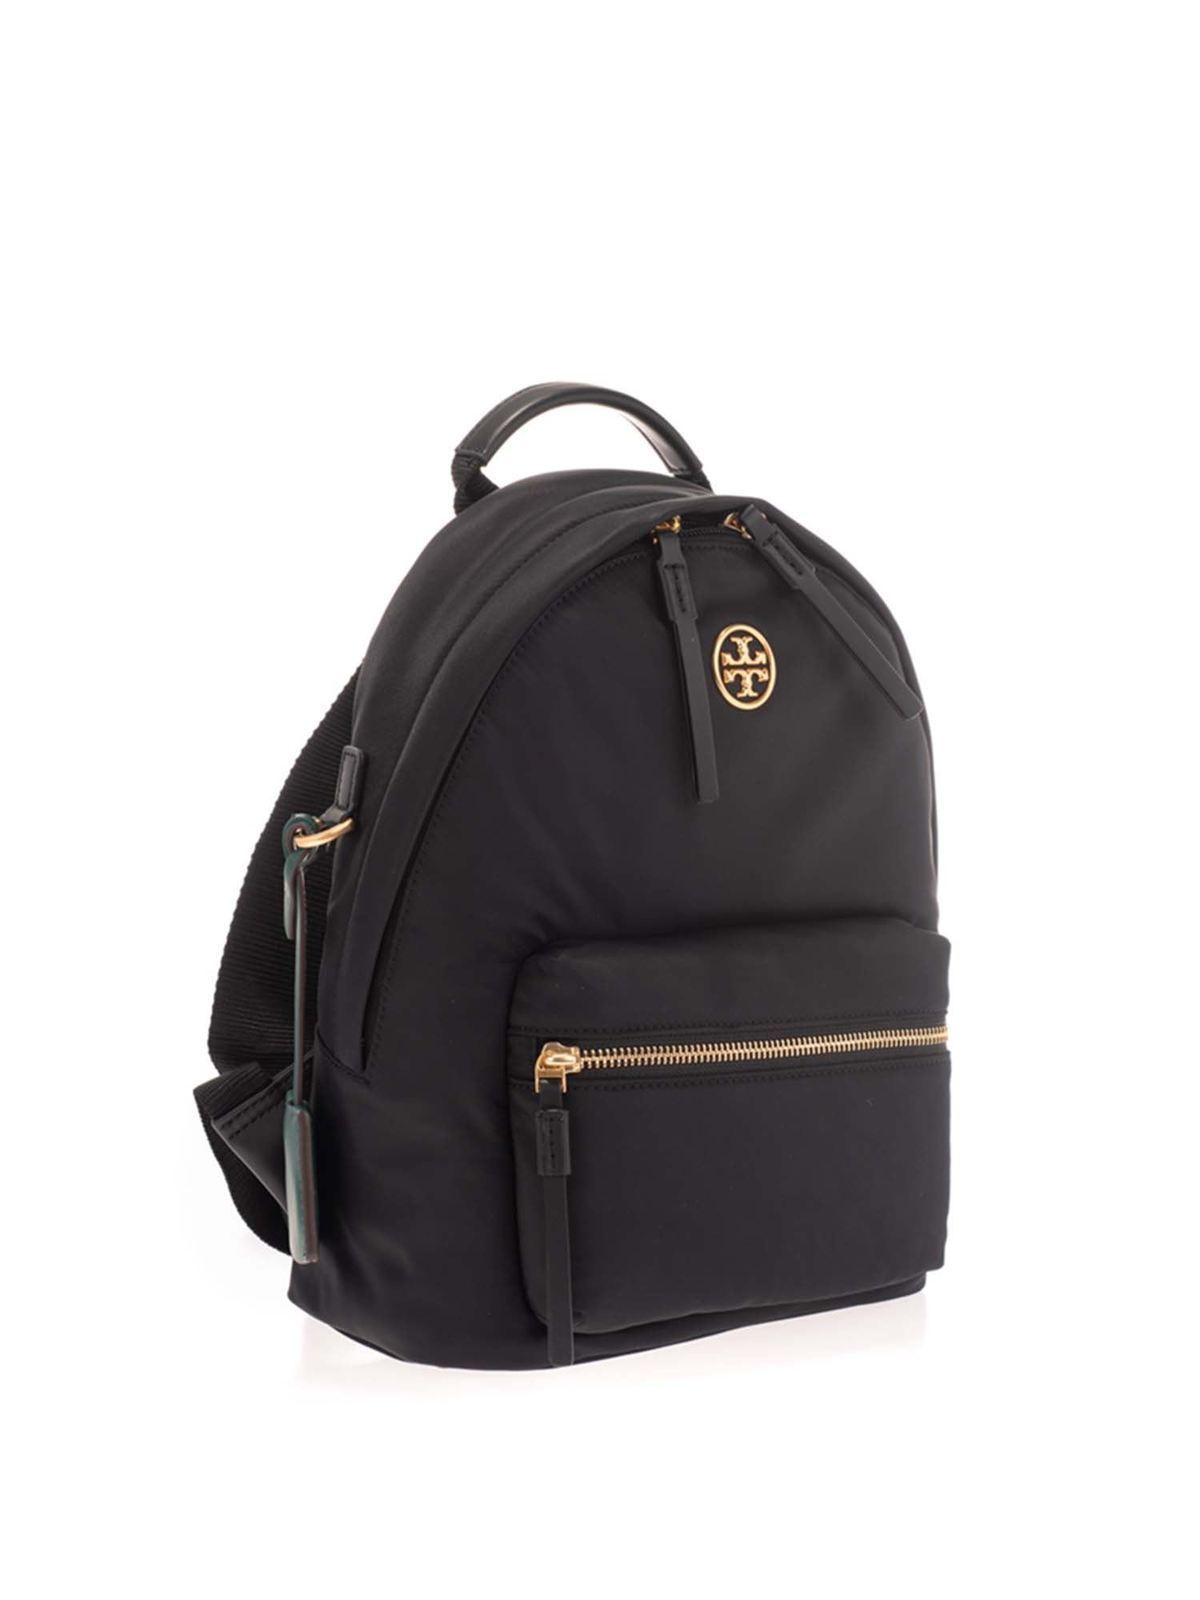 Backpacks Tory Burch - Metal logo backpack in black - 78821001 